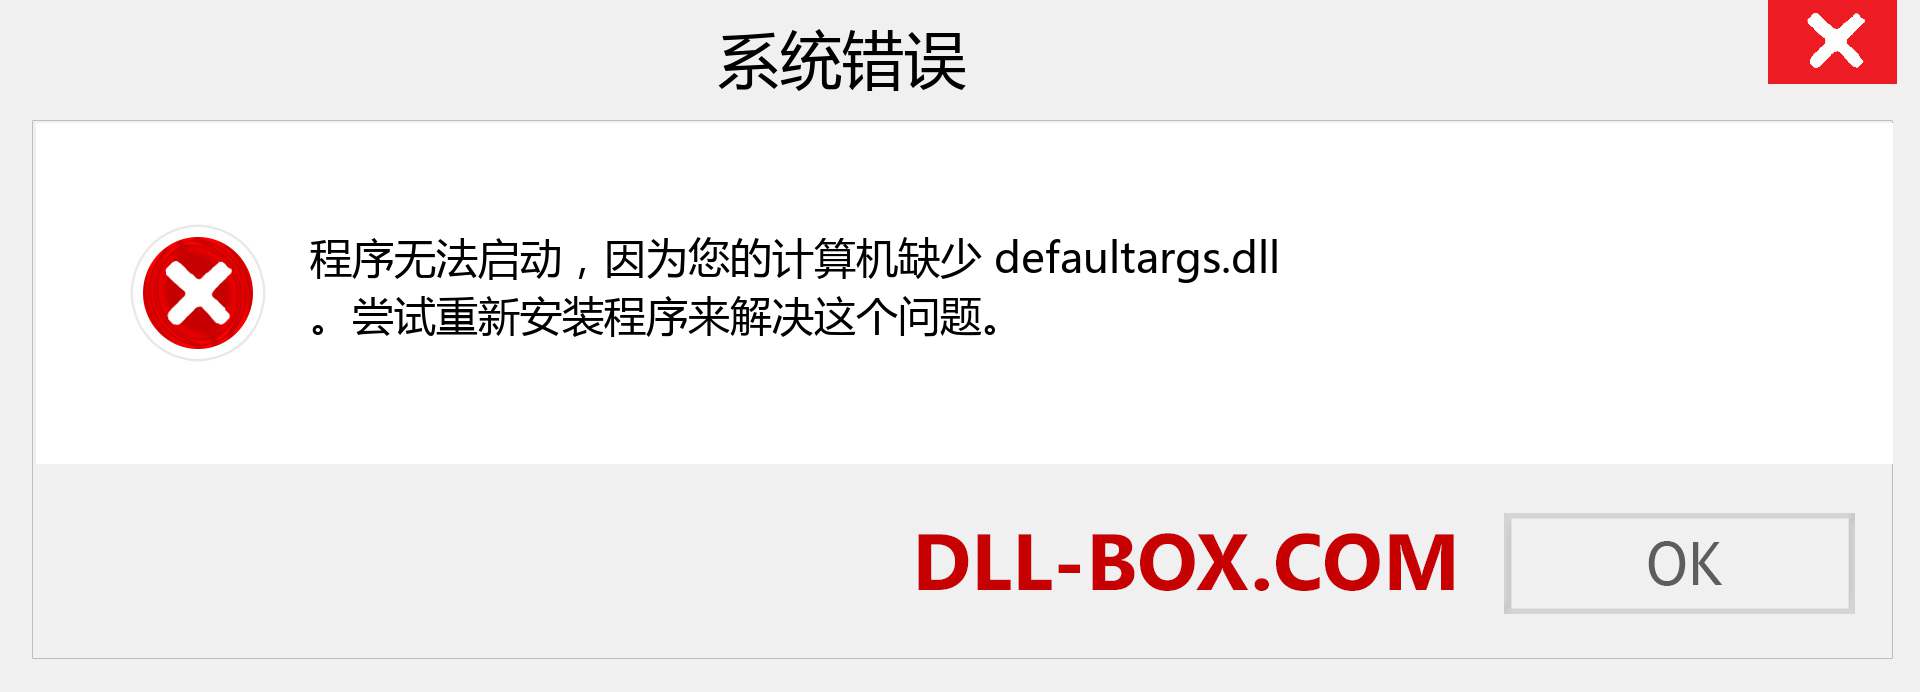 defaultargs.dll 文件丢失？。 适用于 Windows 7、8、10 的下载 - 修复 Windows、照片、图像上的 defaultargs dll 丢失错误